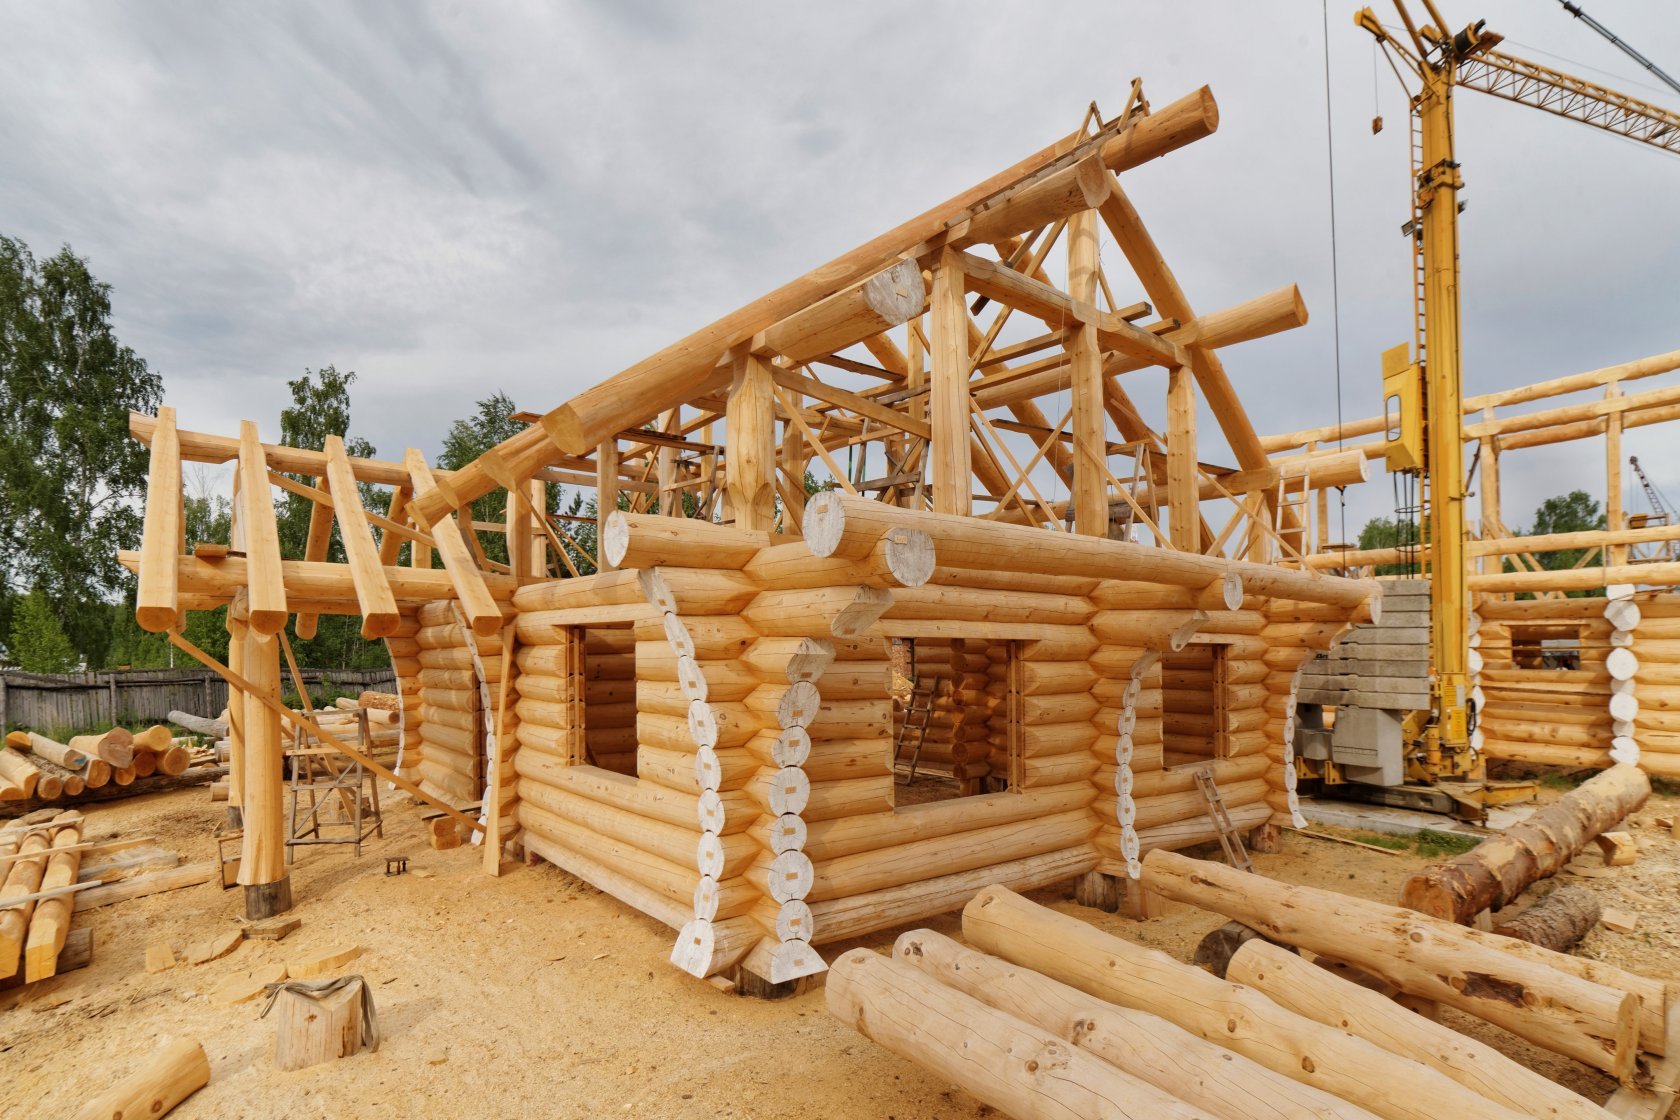 Строительство дома. Основные принципы строительства дома из дерева